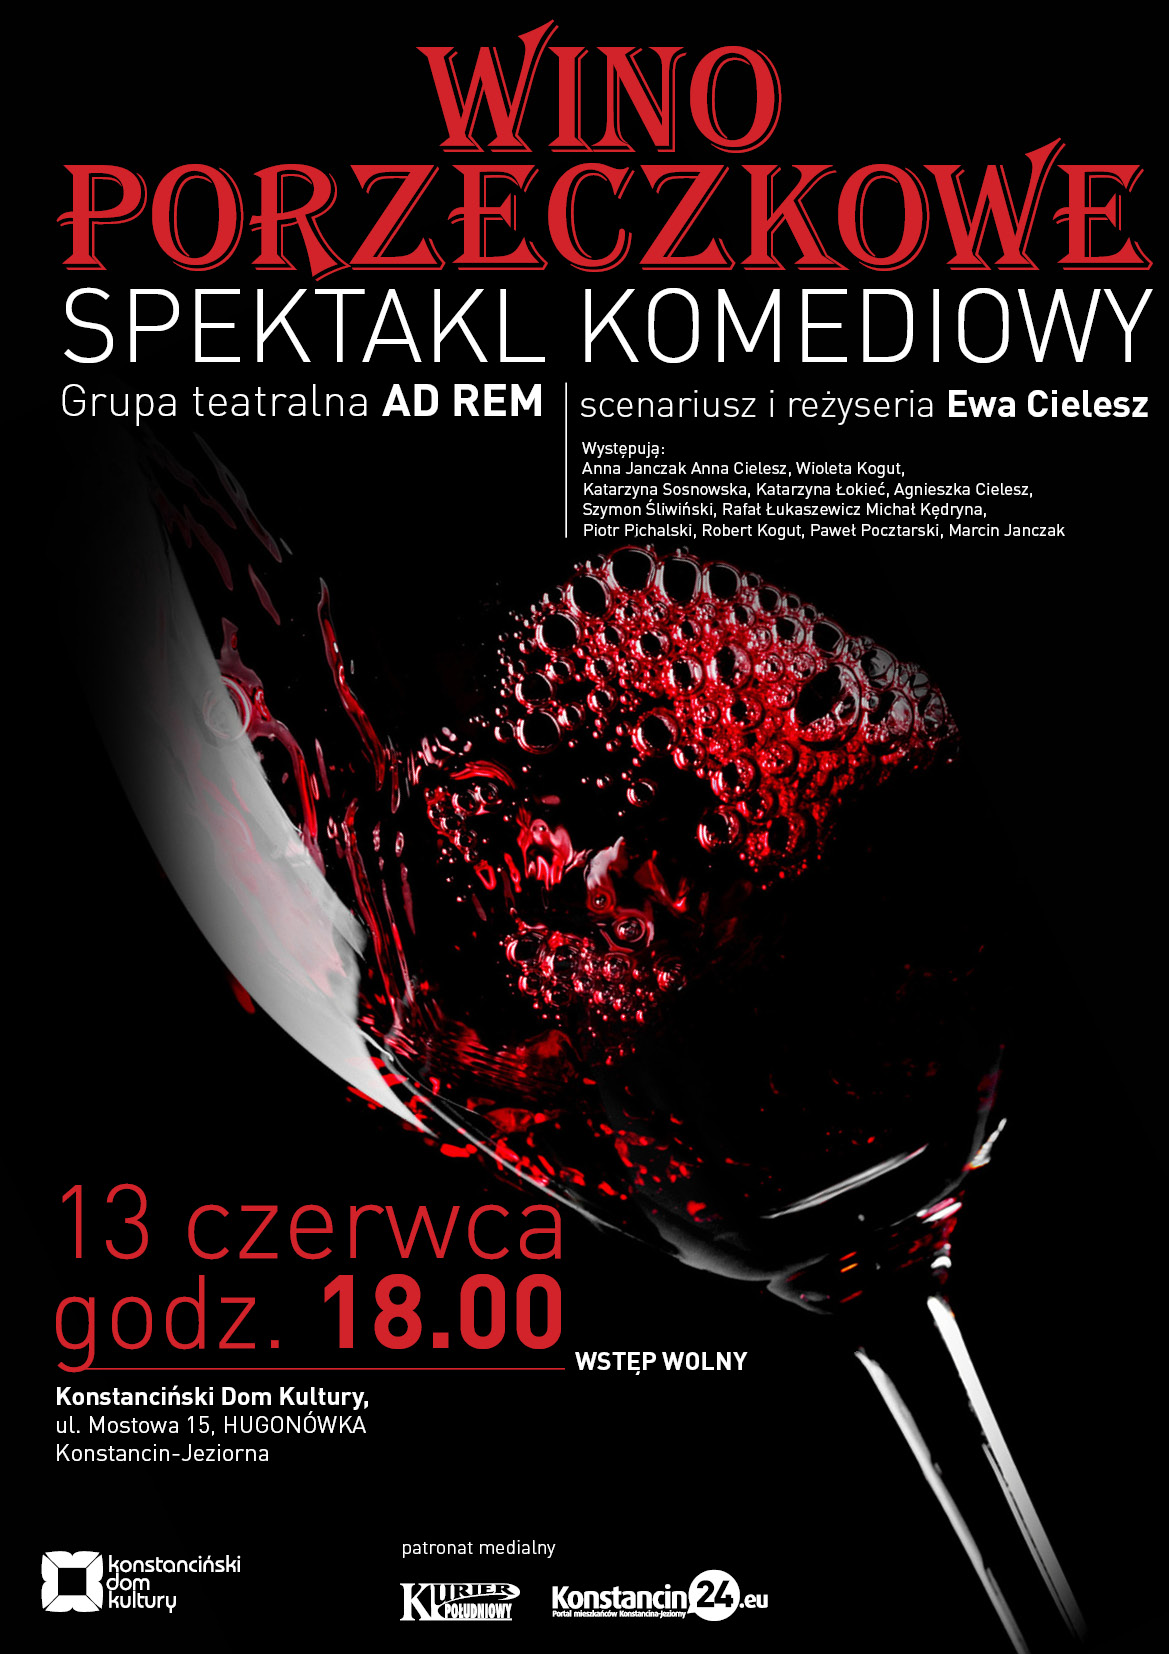 Wino porzeczkowe - spektakl komediowy w KDK Hugonówka